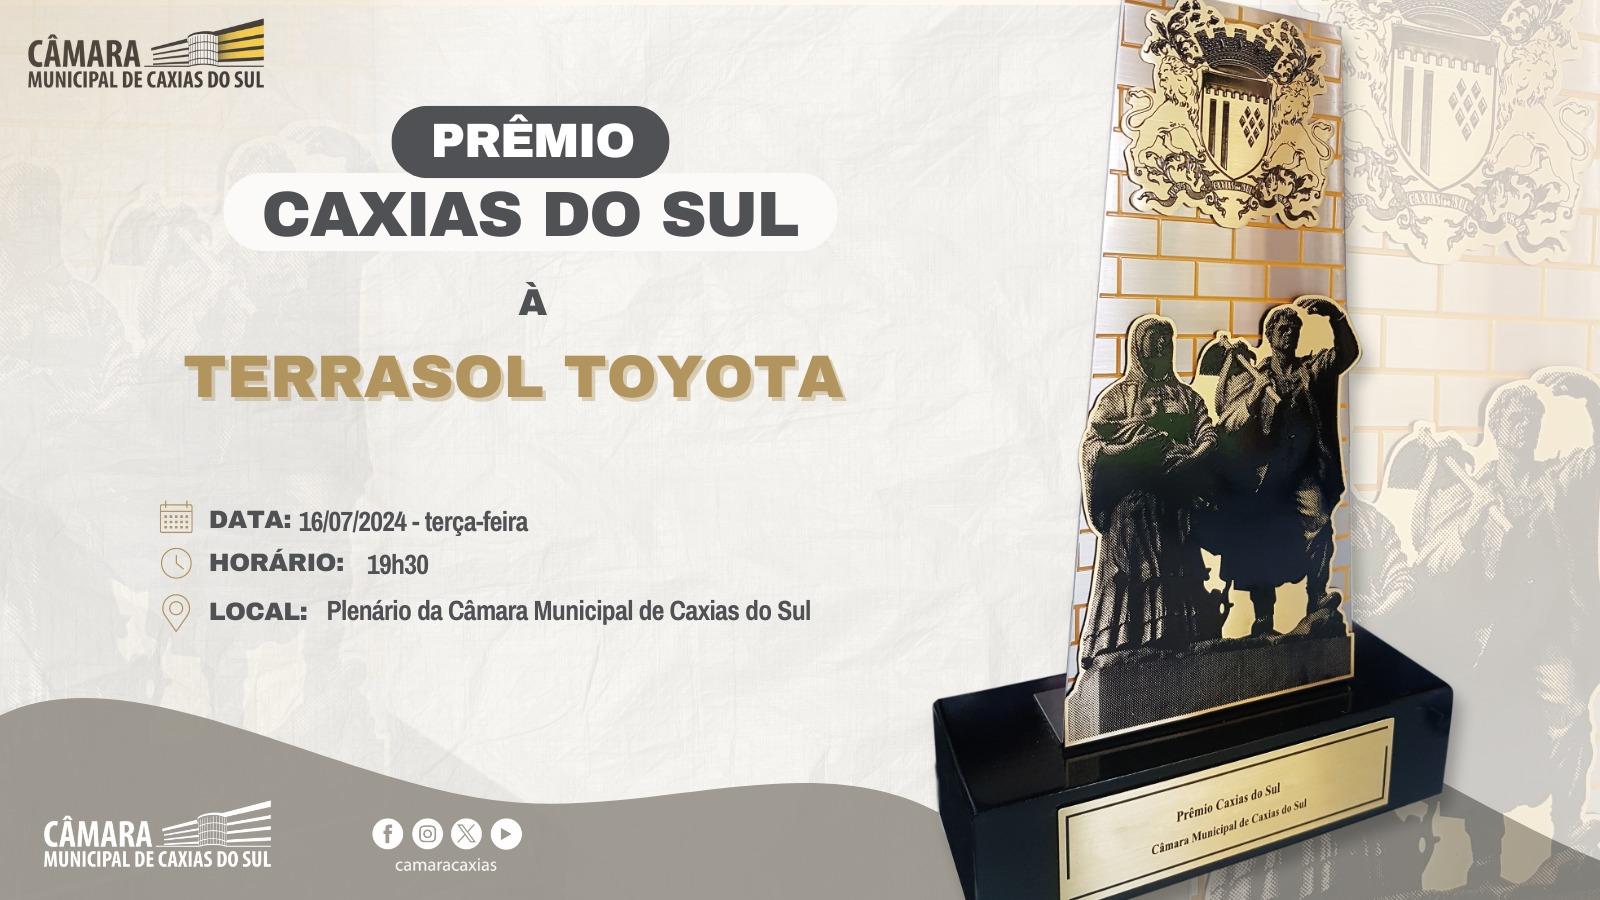 Leia mais sobre Terrasol Toyota receberá o Prêmio Caxias do Sul na próxima terça-feira